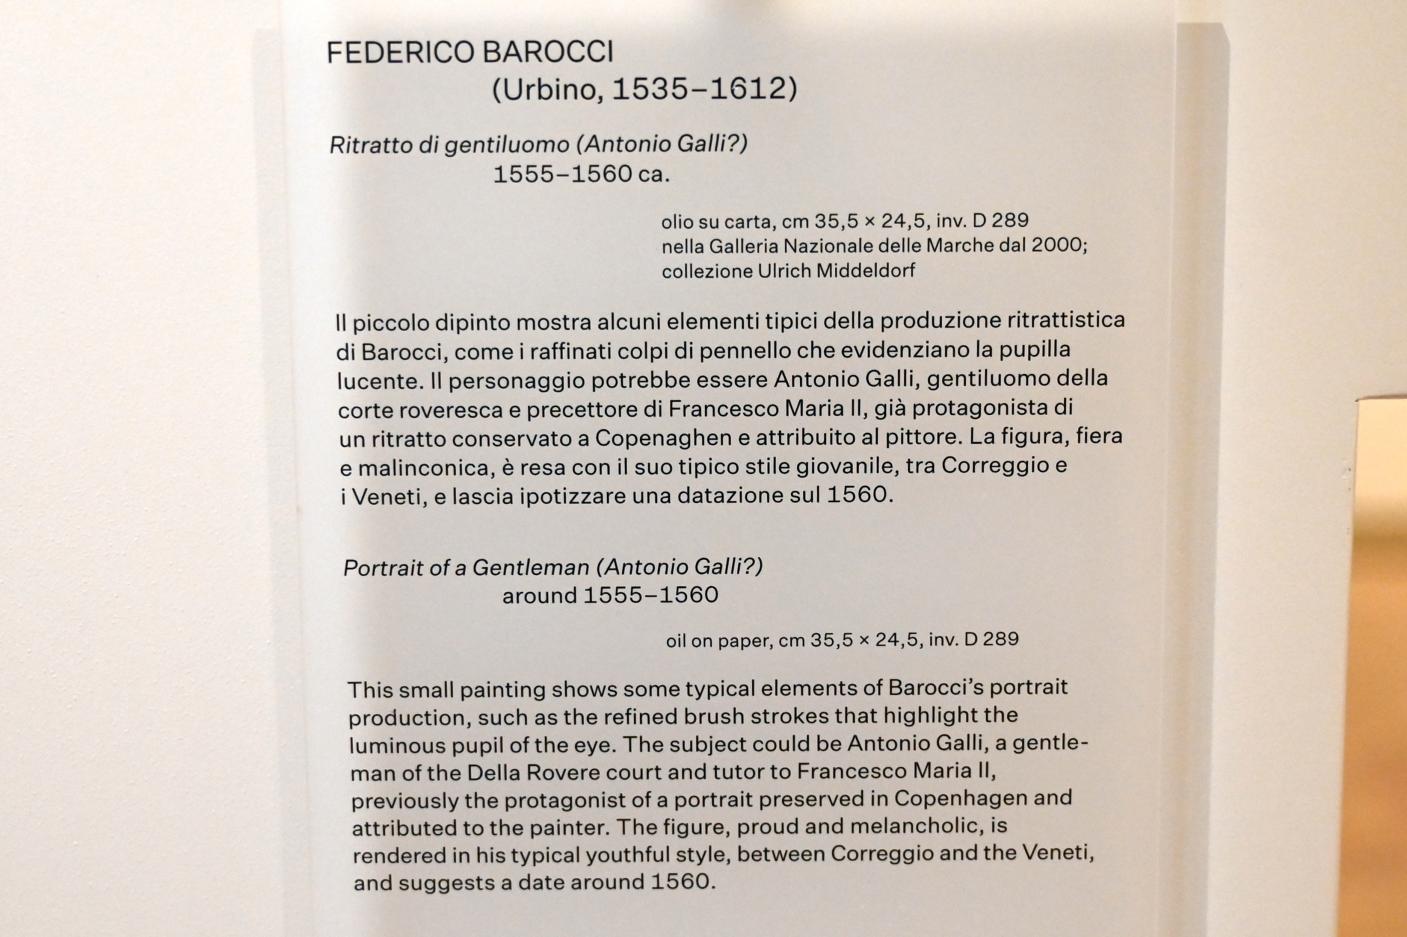 Federico Barocci (1557–1612), Porträt eines Herrn (Antonio Galli?), Urbino, Galleria Nazionale delle Marche, Obergeschoß Saal 11, um 1555–1560, Bild 2/2